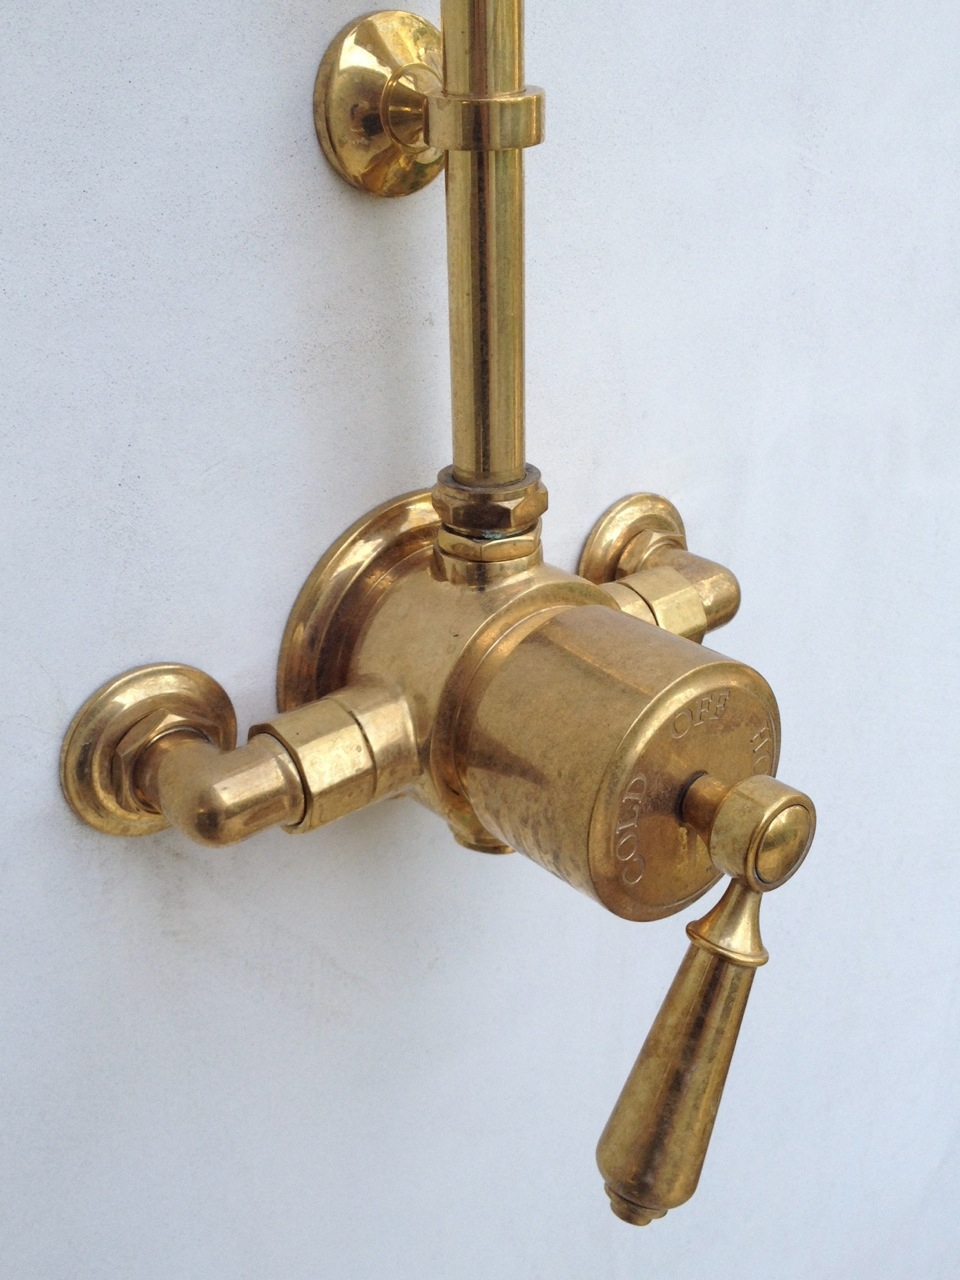 Antique brass shower fixtures